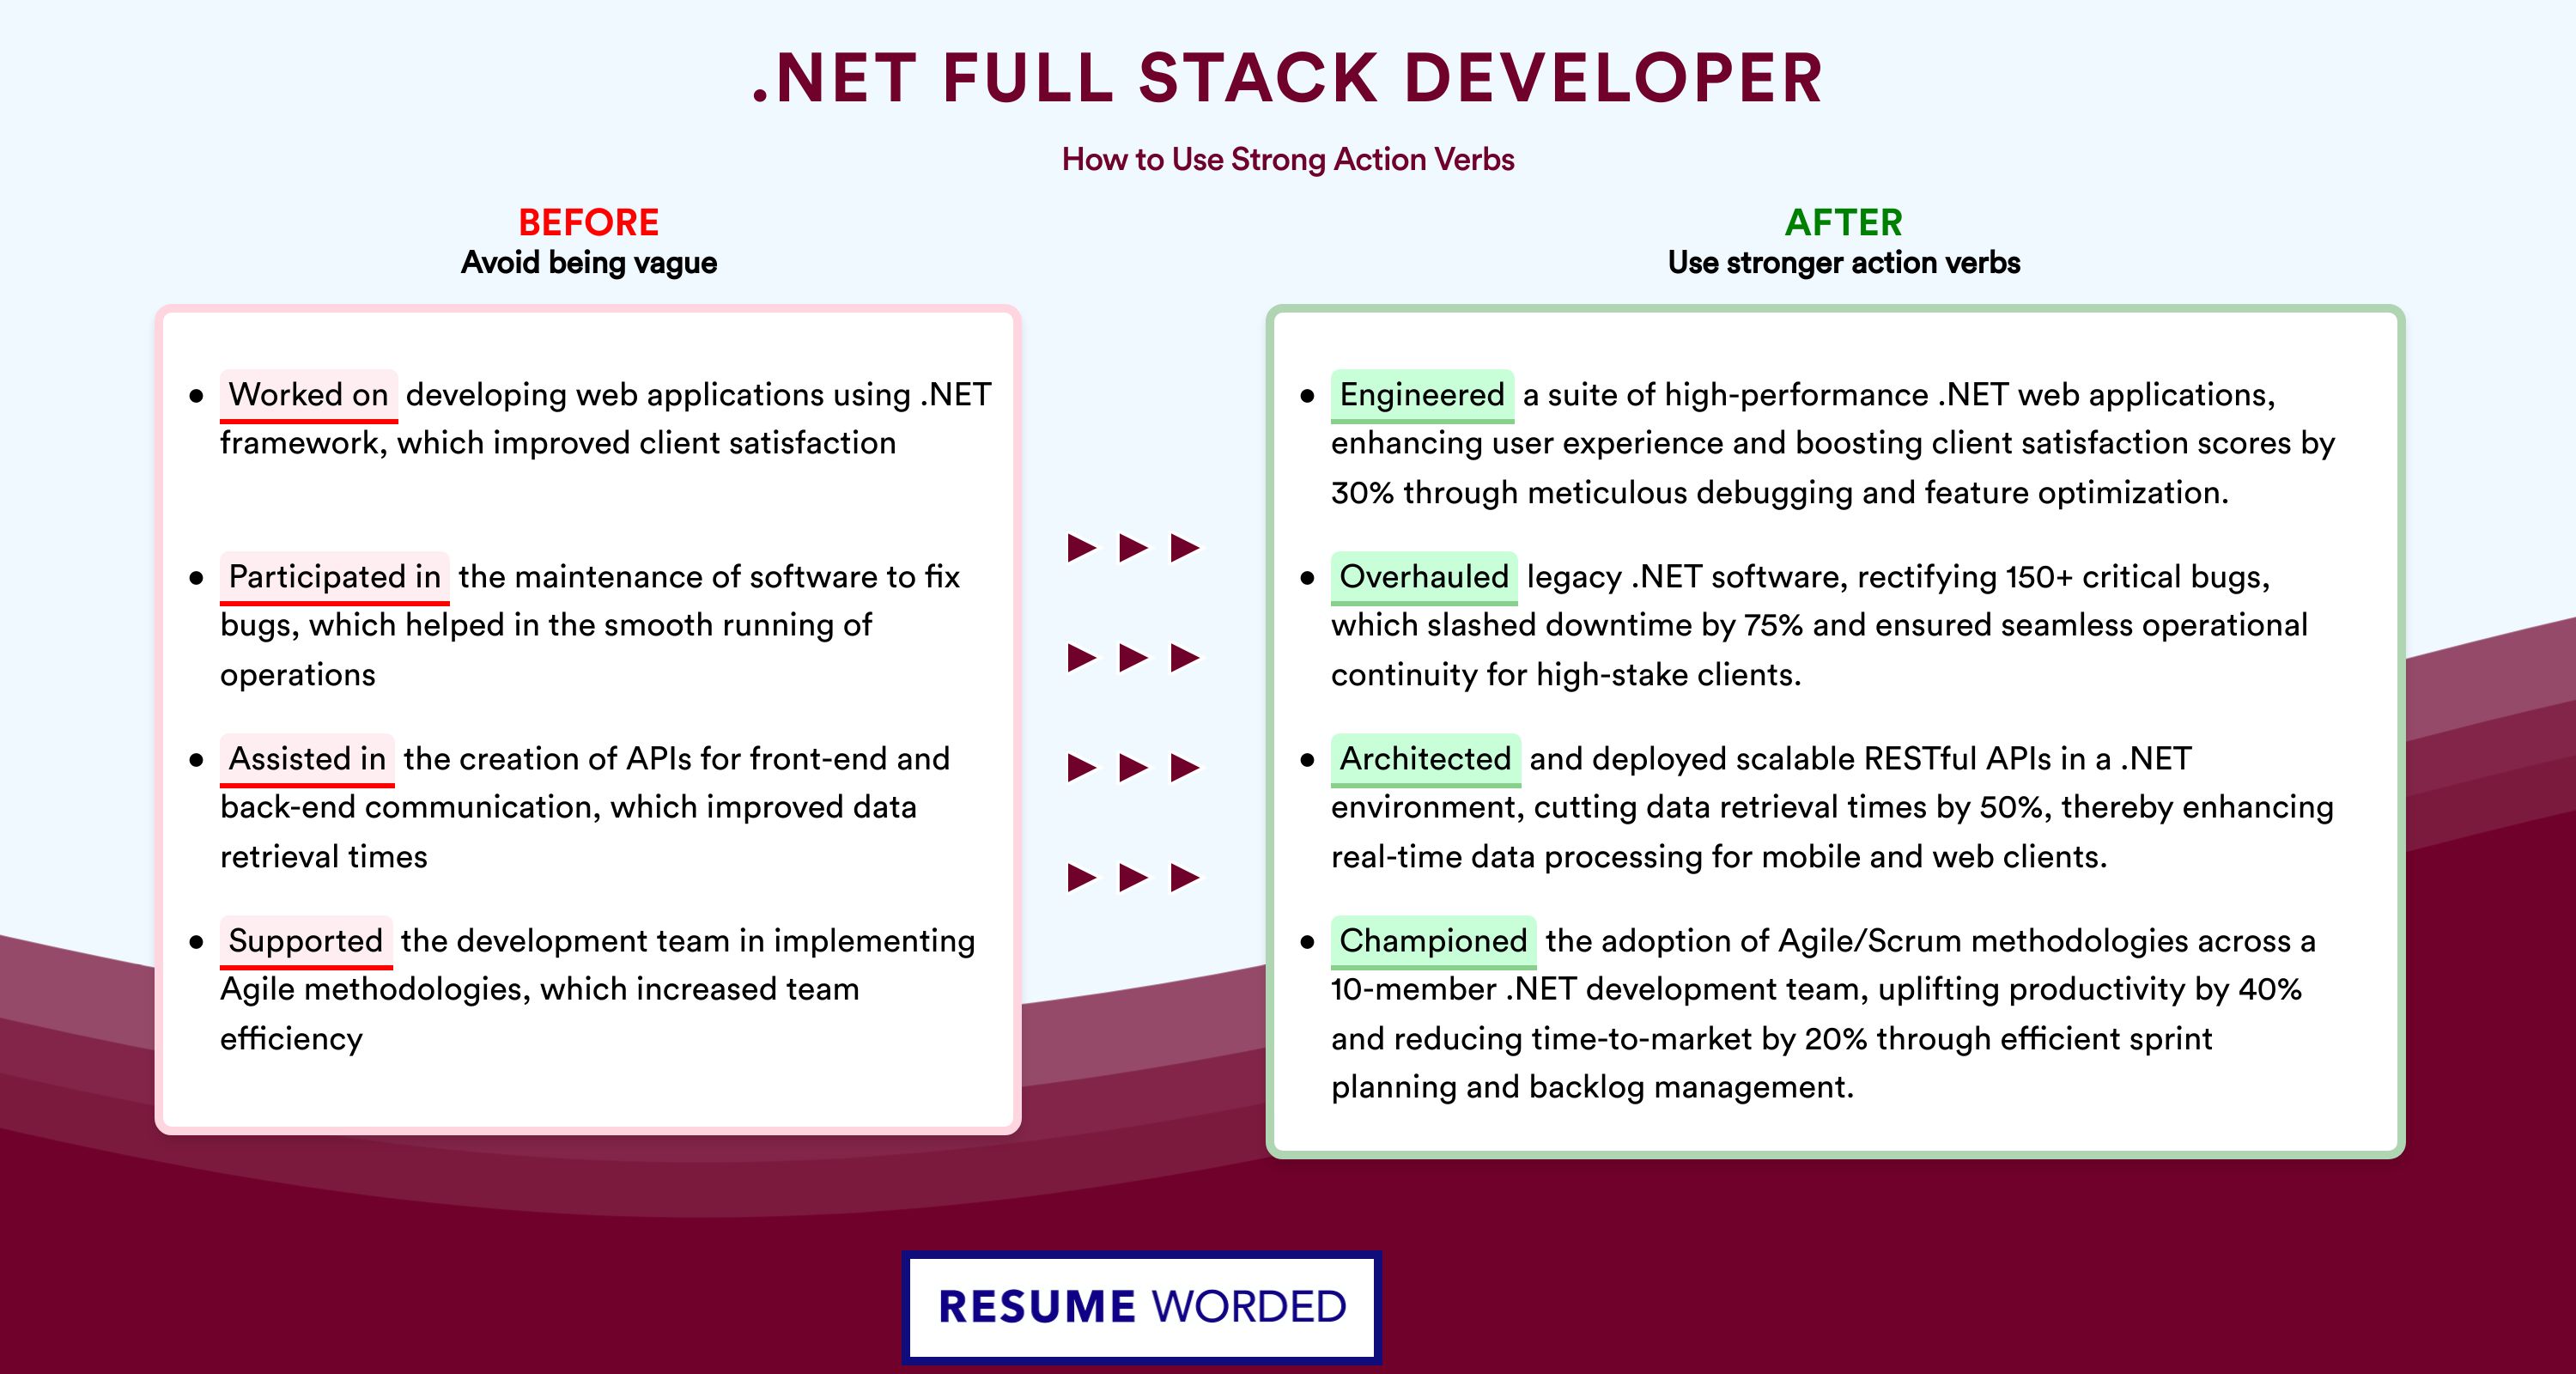 Action Verbs for .NET Full Stack Developer